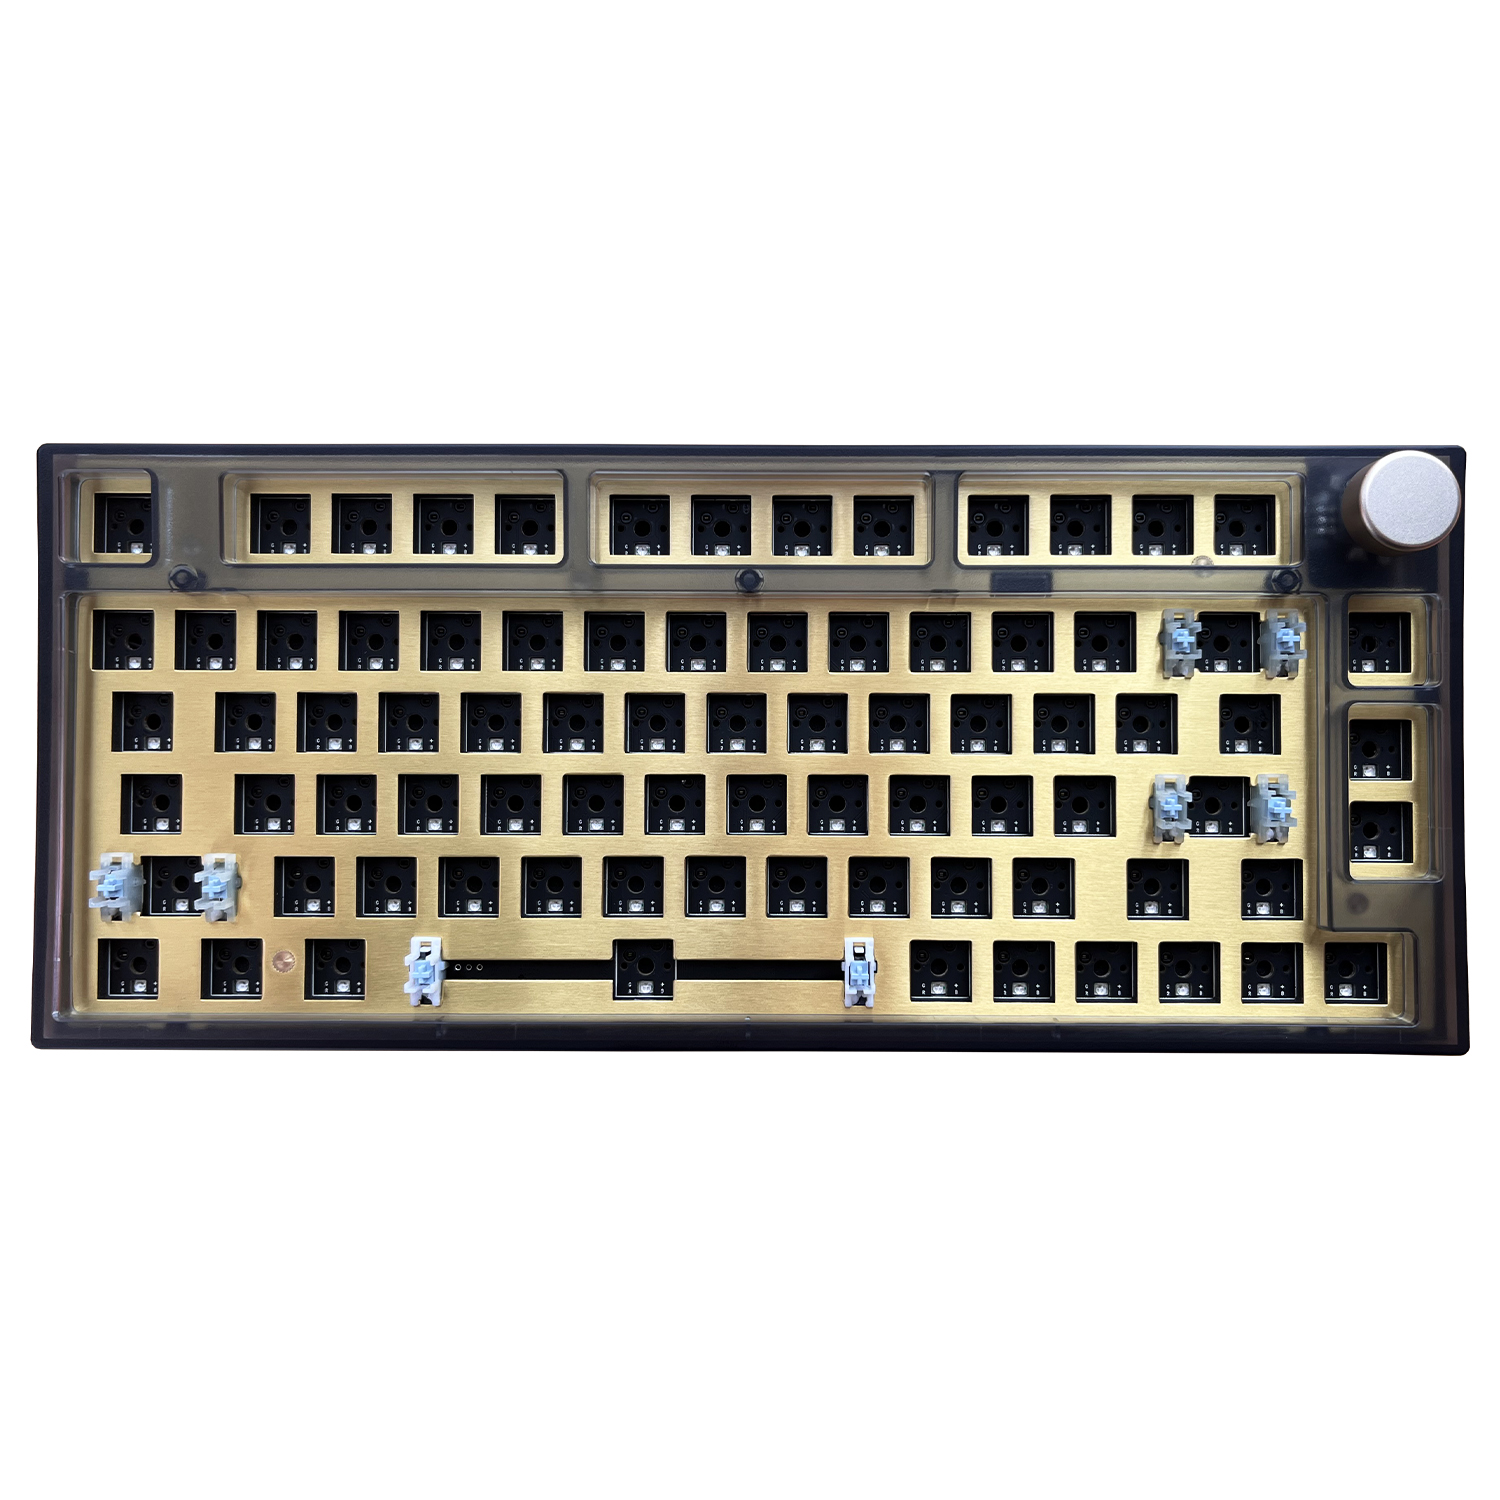 NJ80-AP 套件 无线机械键盘